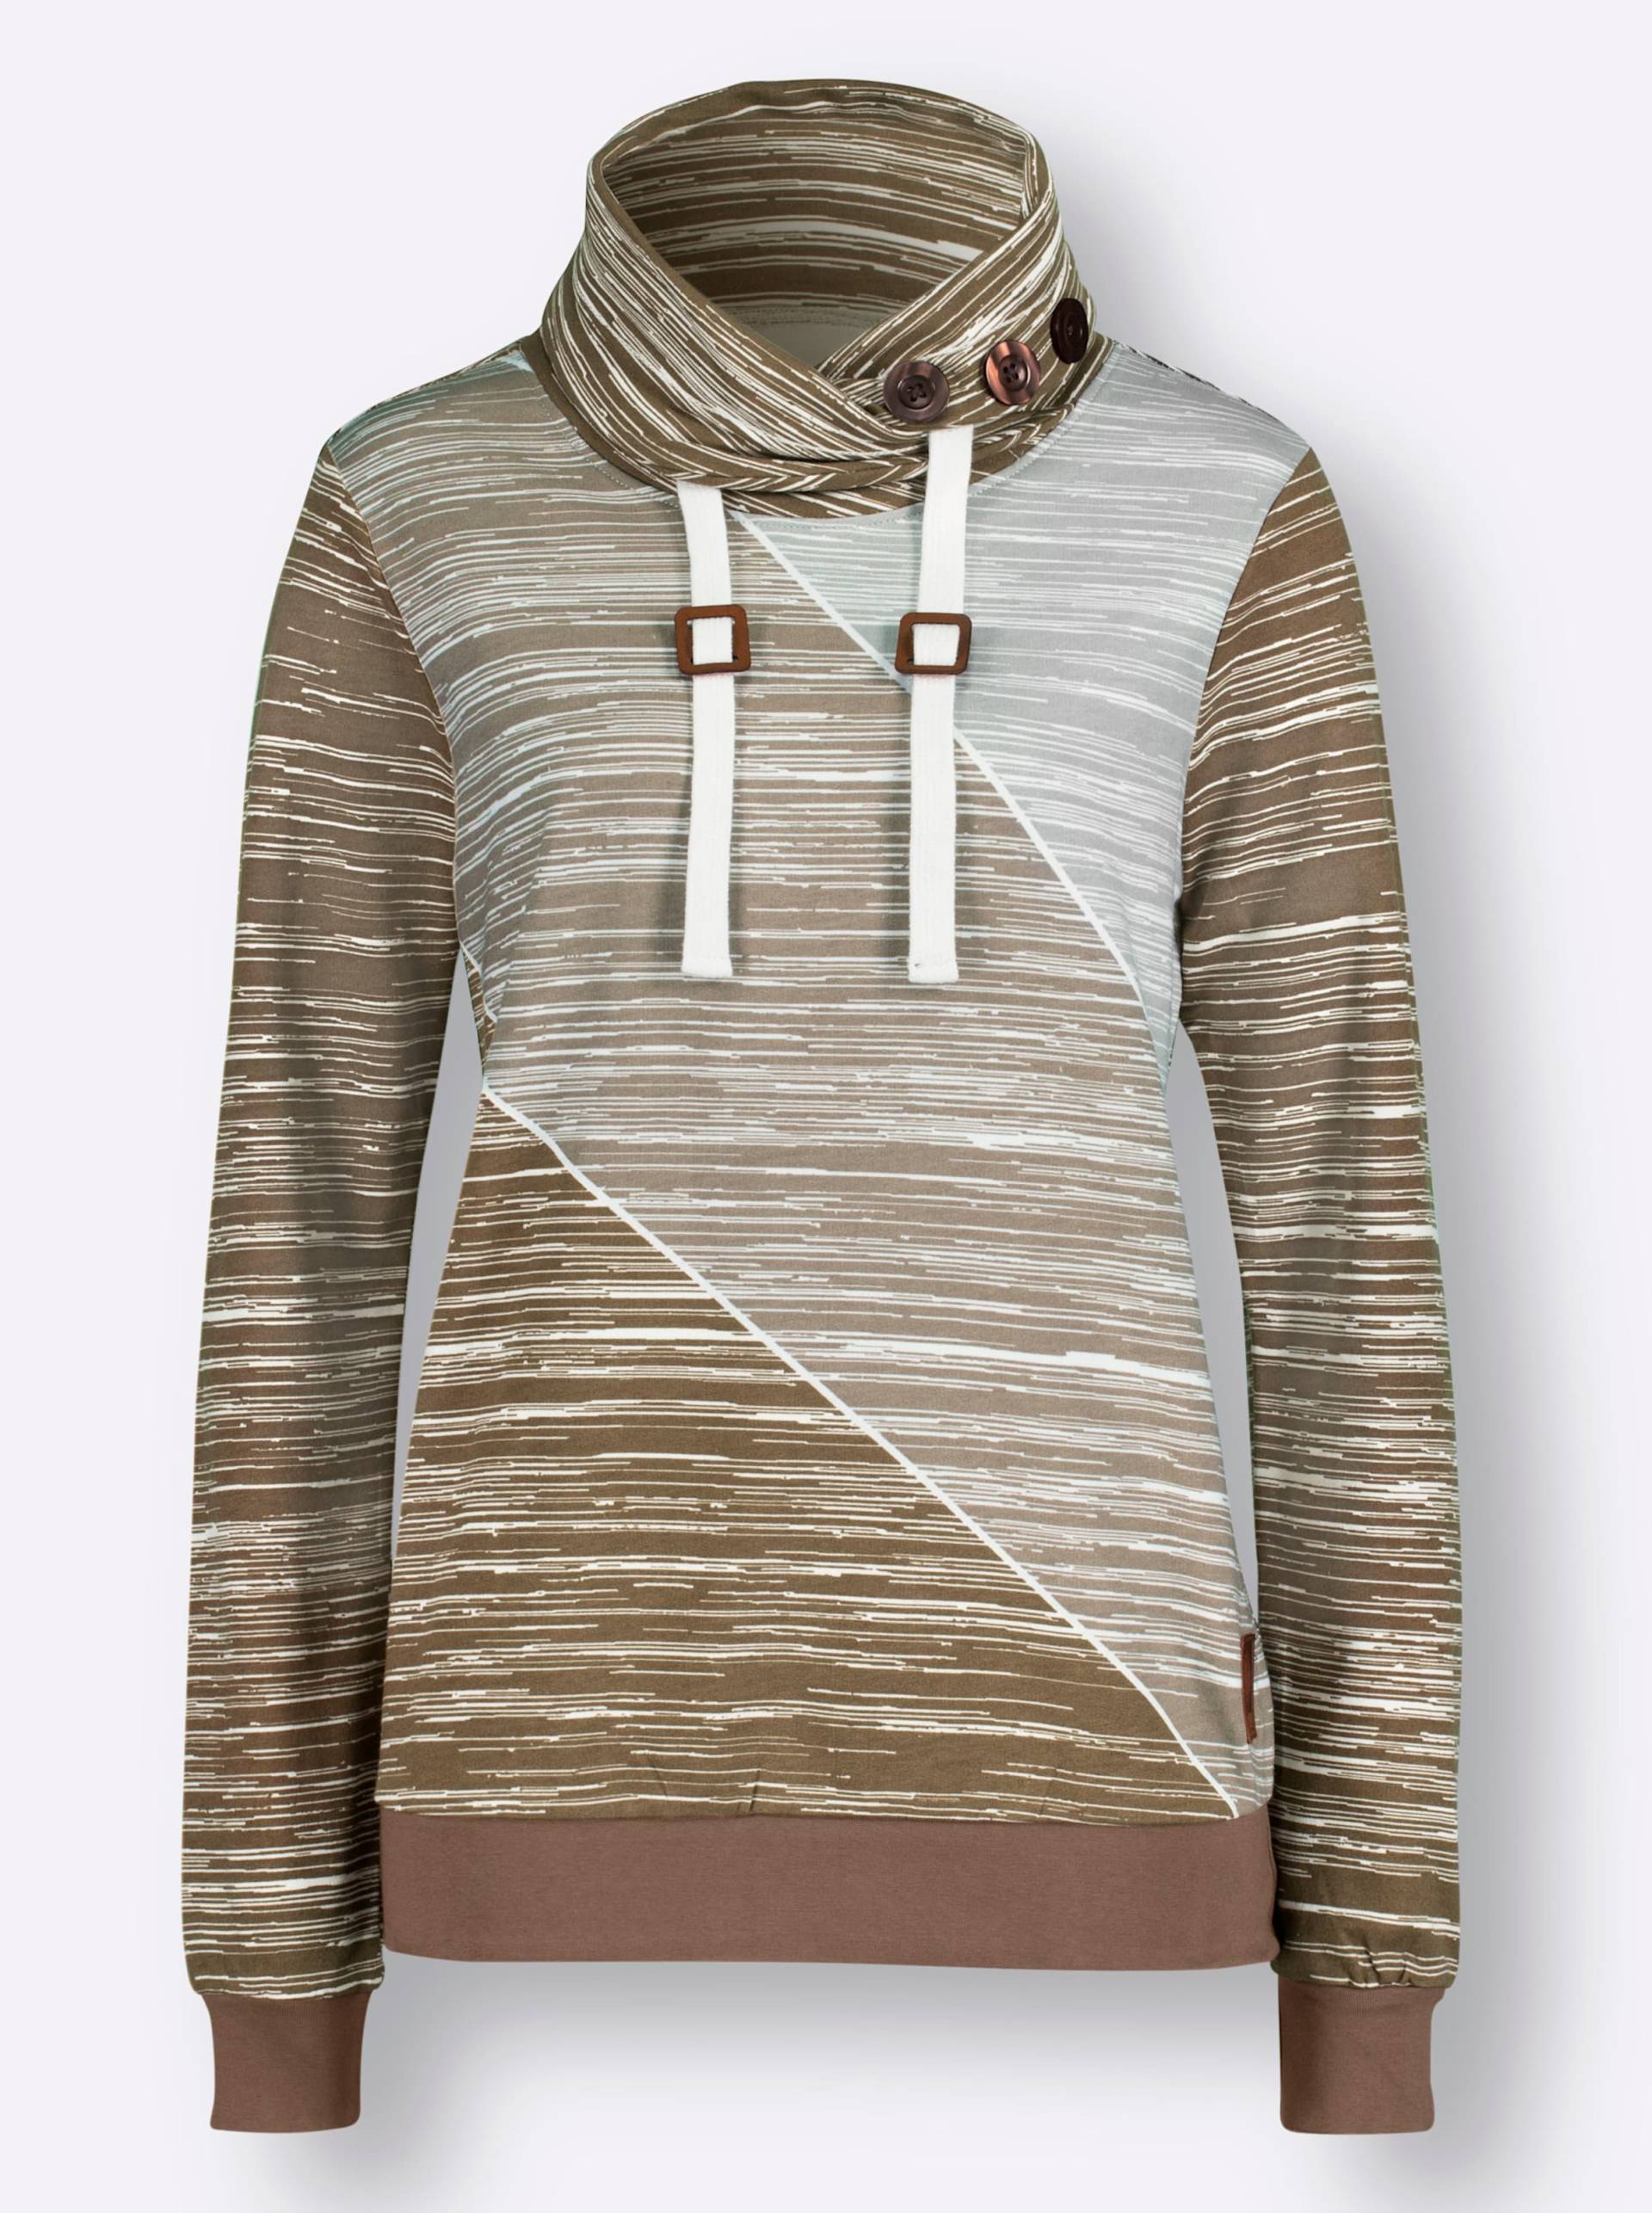 Sweatshirt in braun-ecru-bedruckt von heine